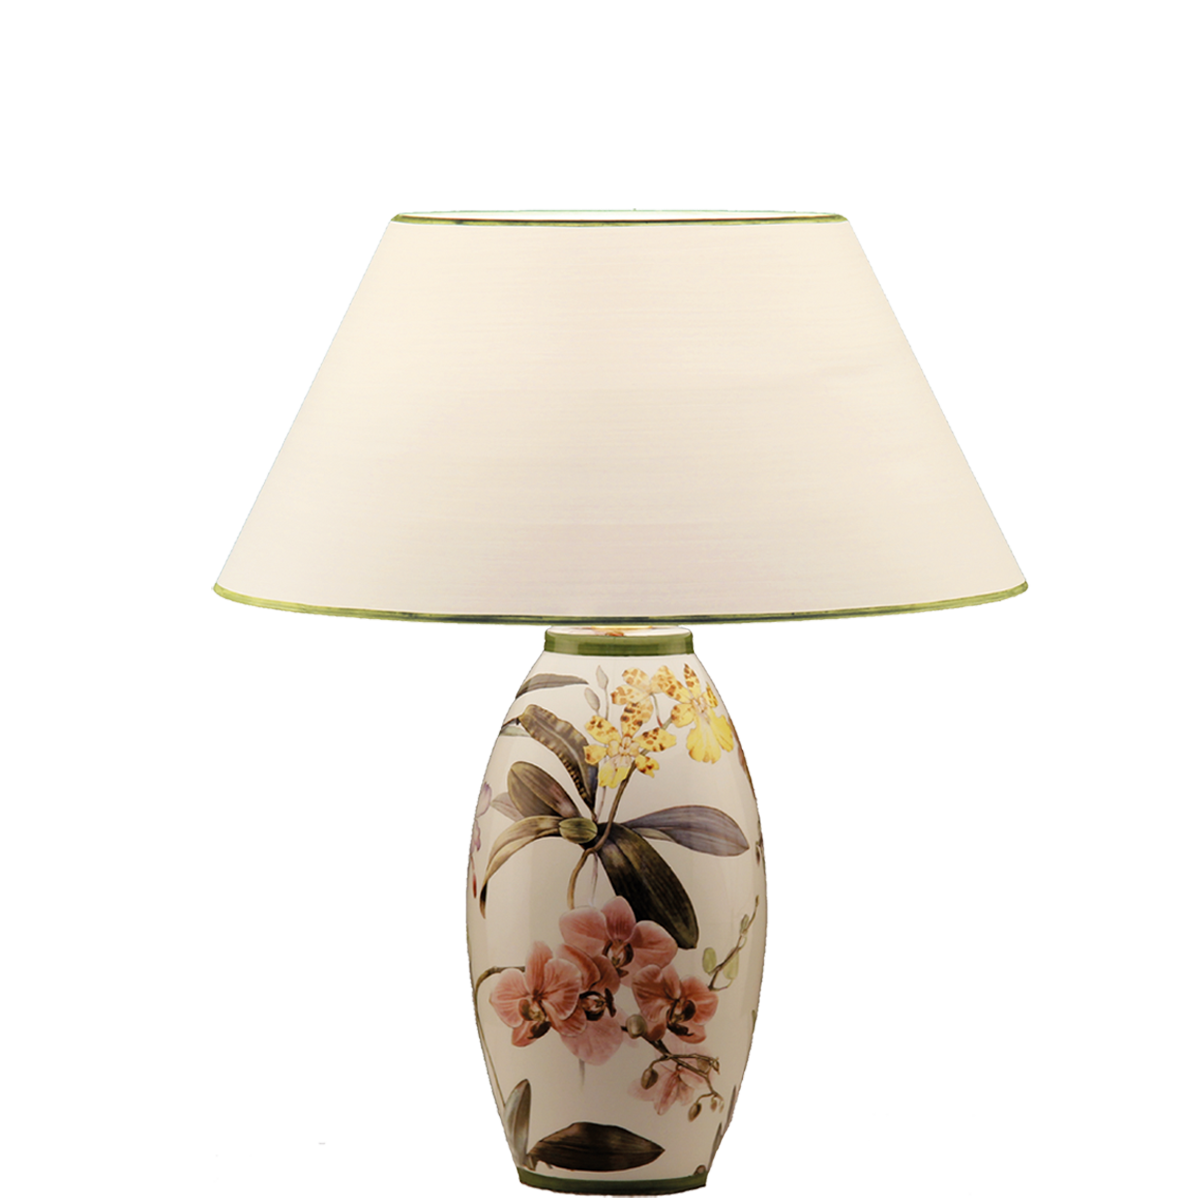 Tischleuchte 1 Keramik Vasenleuchte mit Dekor Orchidee E27 mit Lampenschirm in Strichlack Farbe nach Wahl